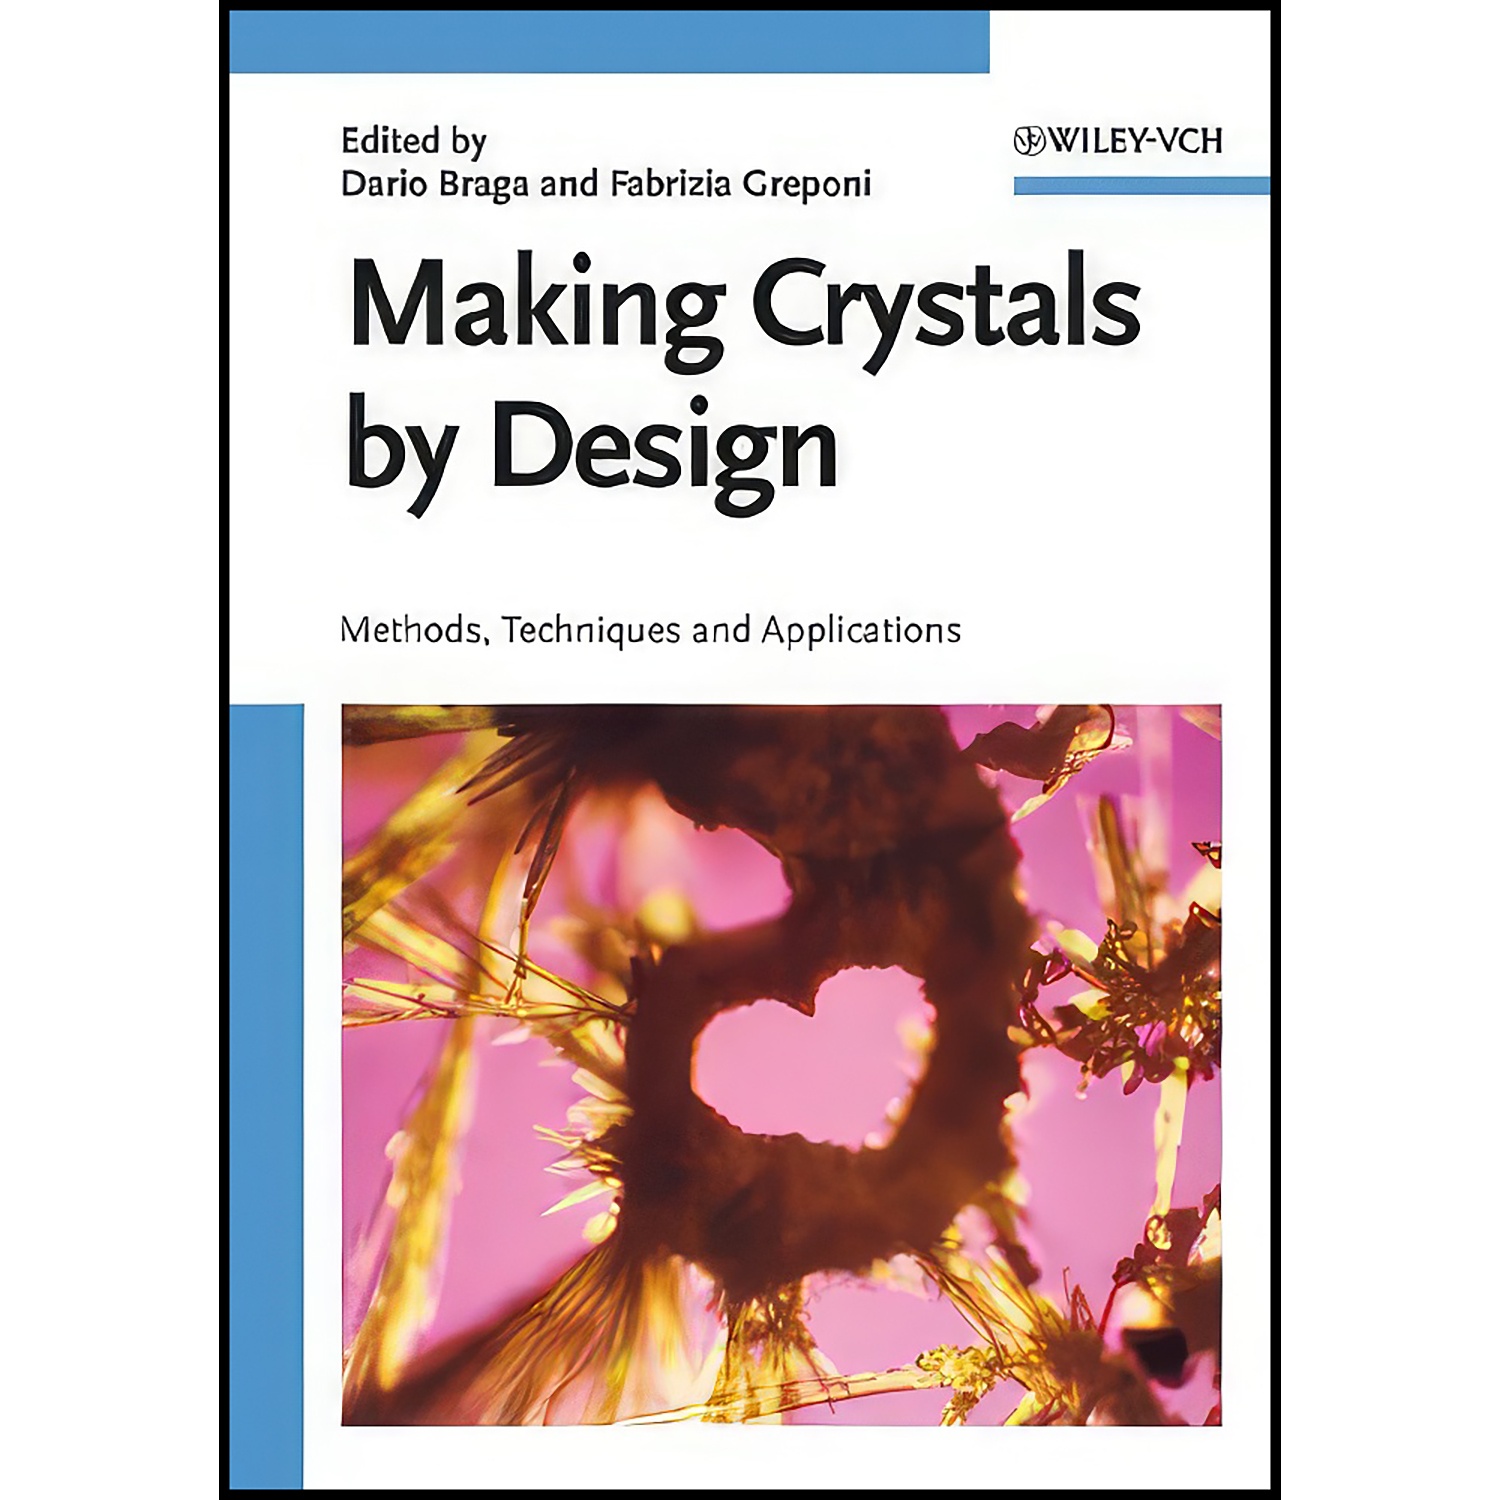 کتاب Making Crystals by Design اثر Dario Braga and Fabrizia Grepioni انتشارات Wiley-VCH